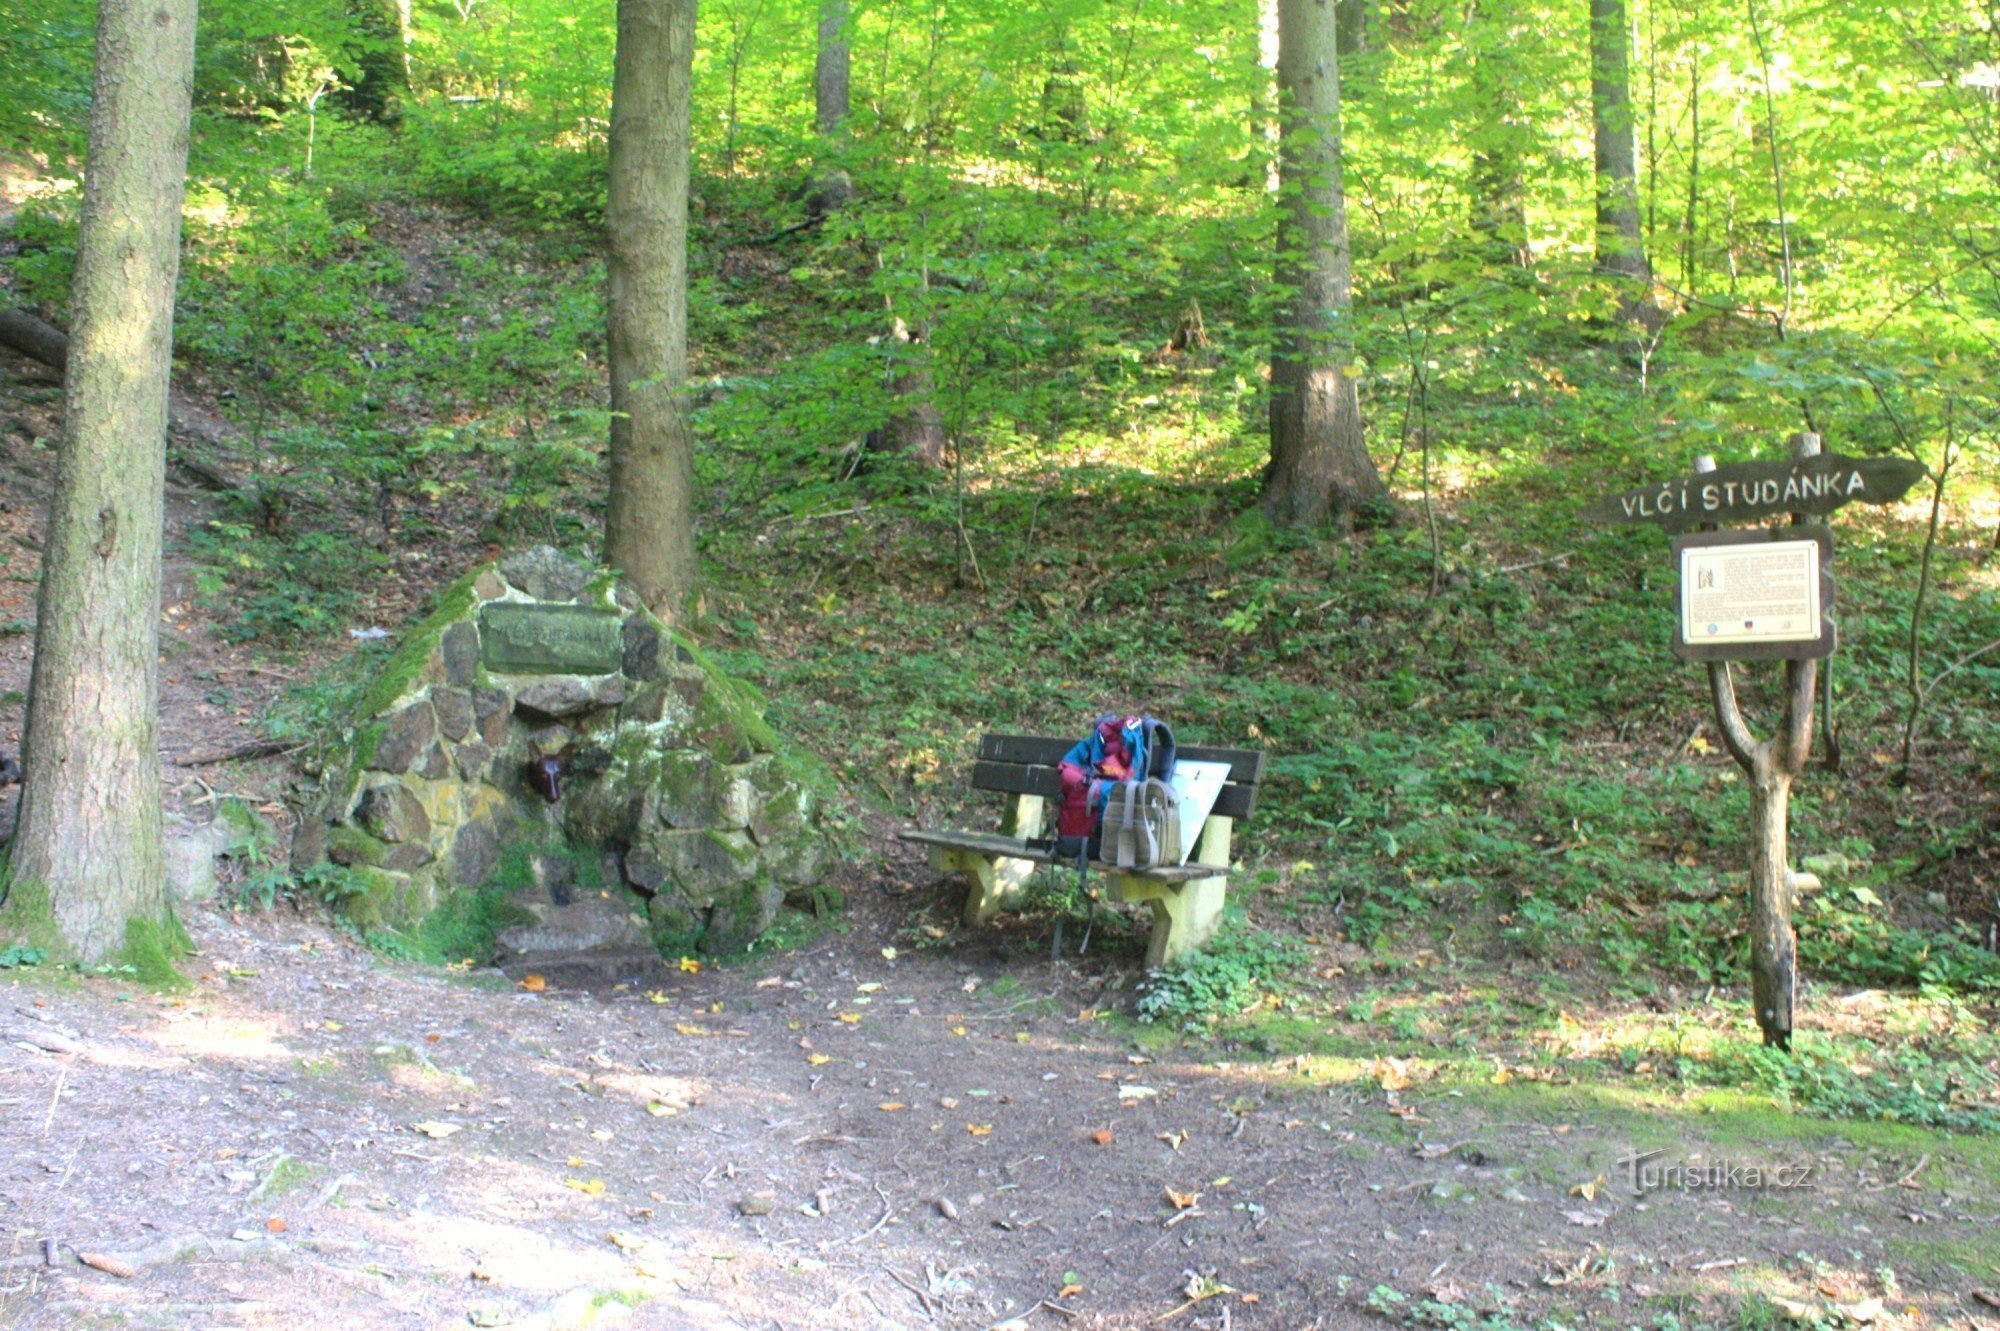 Hvilested Vlčí studánka